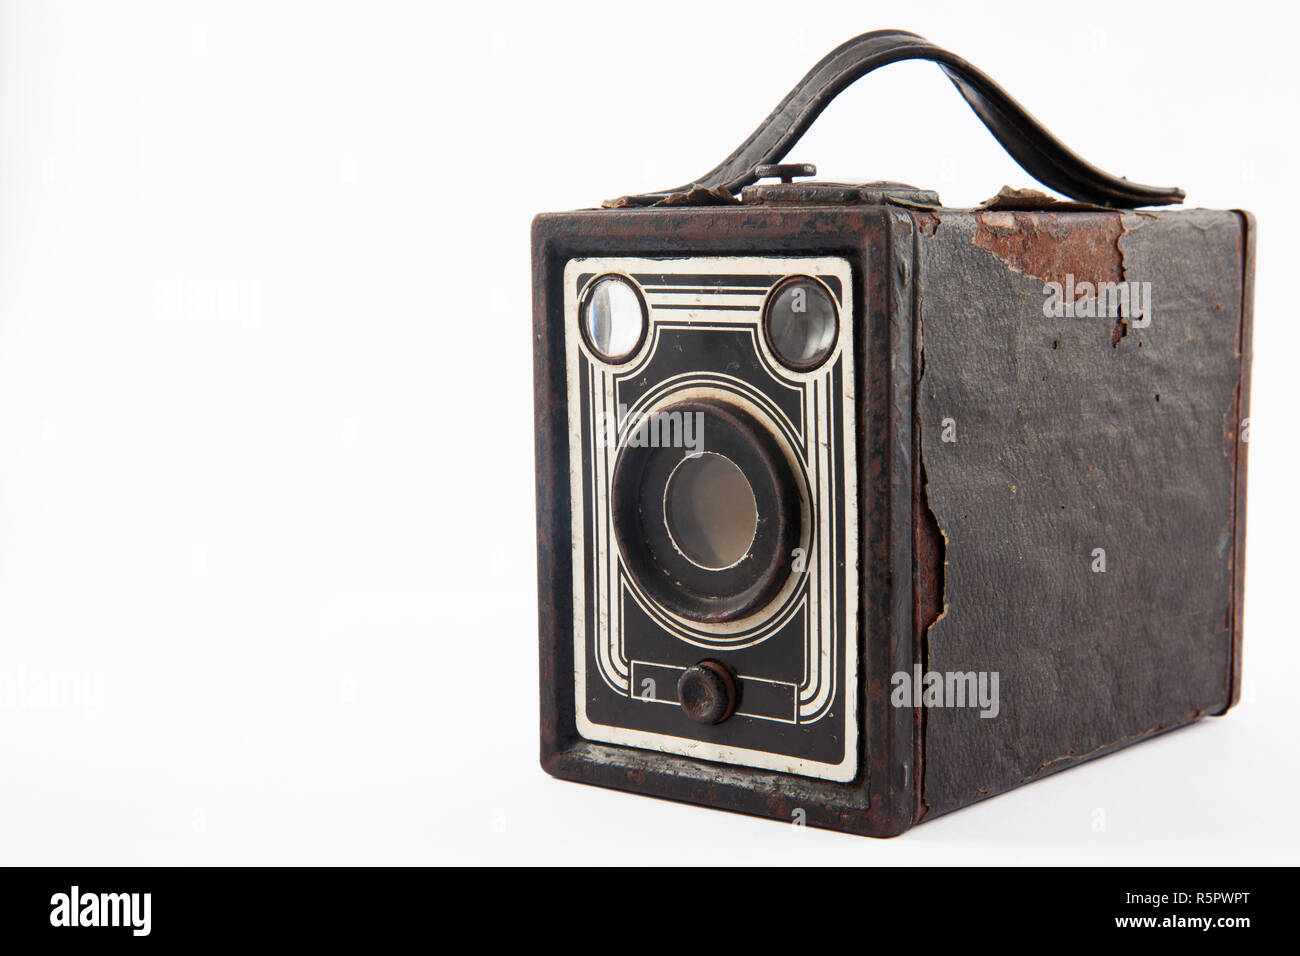 Antique camera isolated on white background Stock Photo